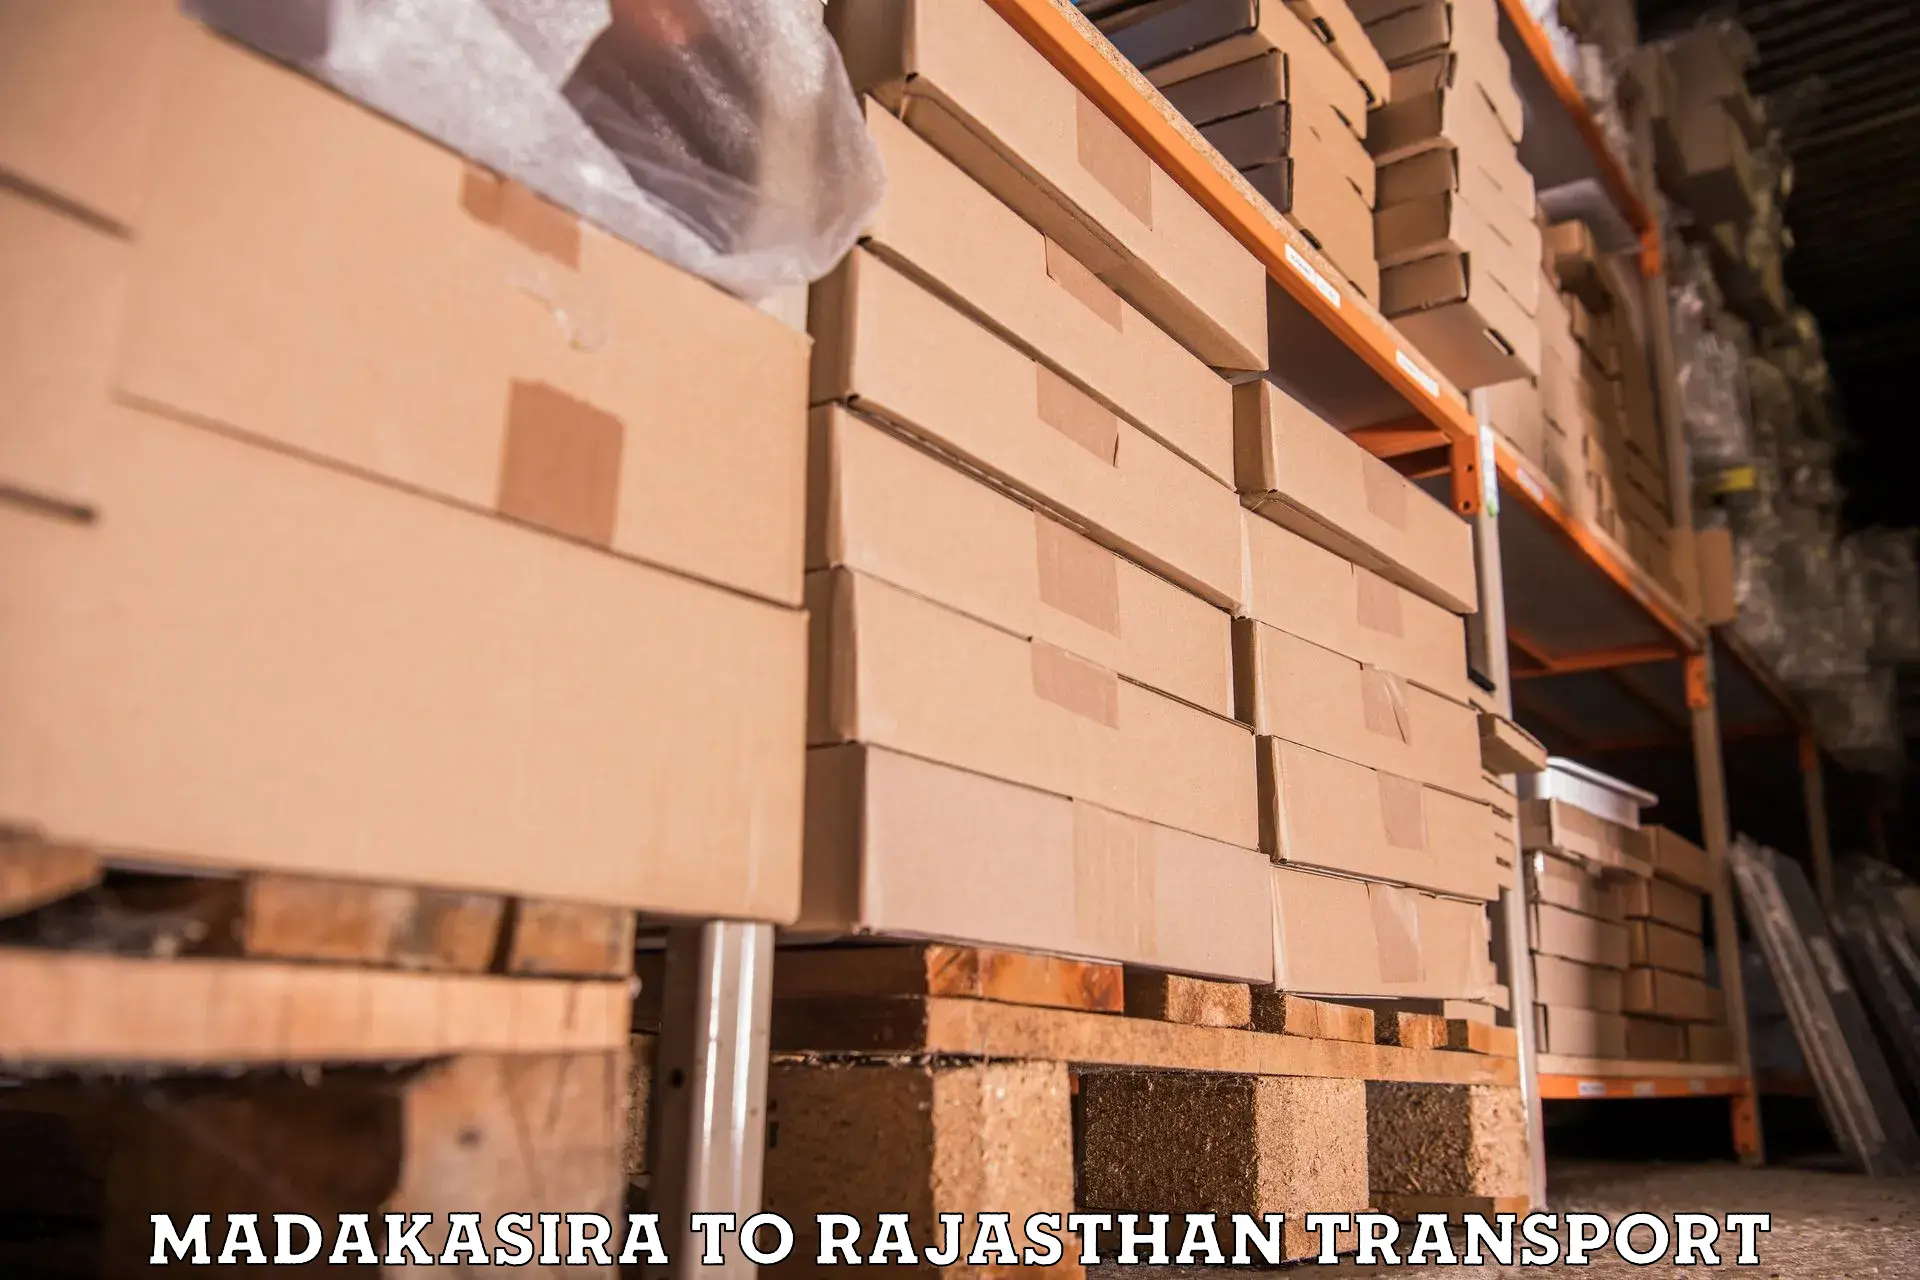 Truck transport companies in India Madakasira to Rajsamand